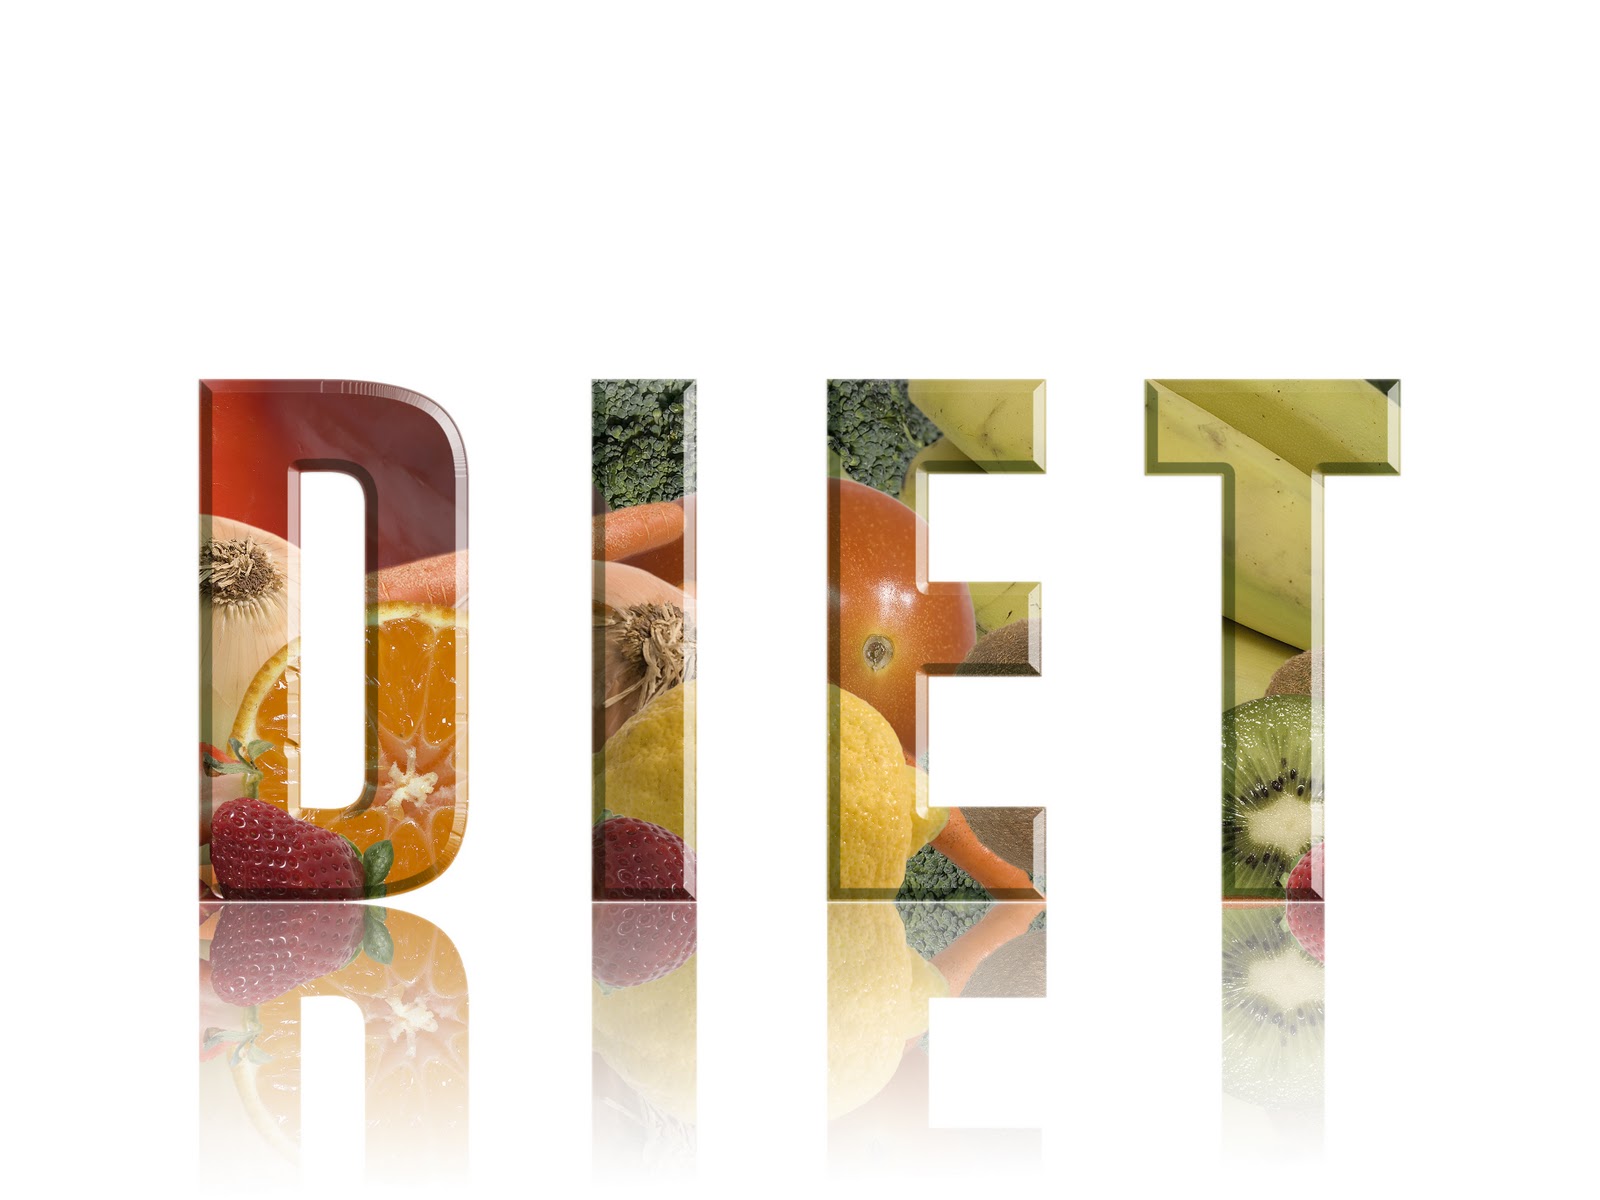 diet sehat dan cepat, Diet Sehat, diet cepat, diet dengan melilea, diet, 